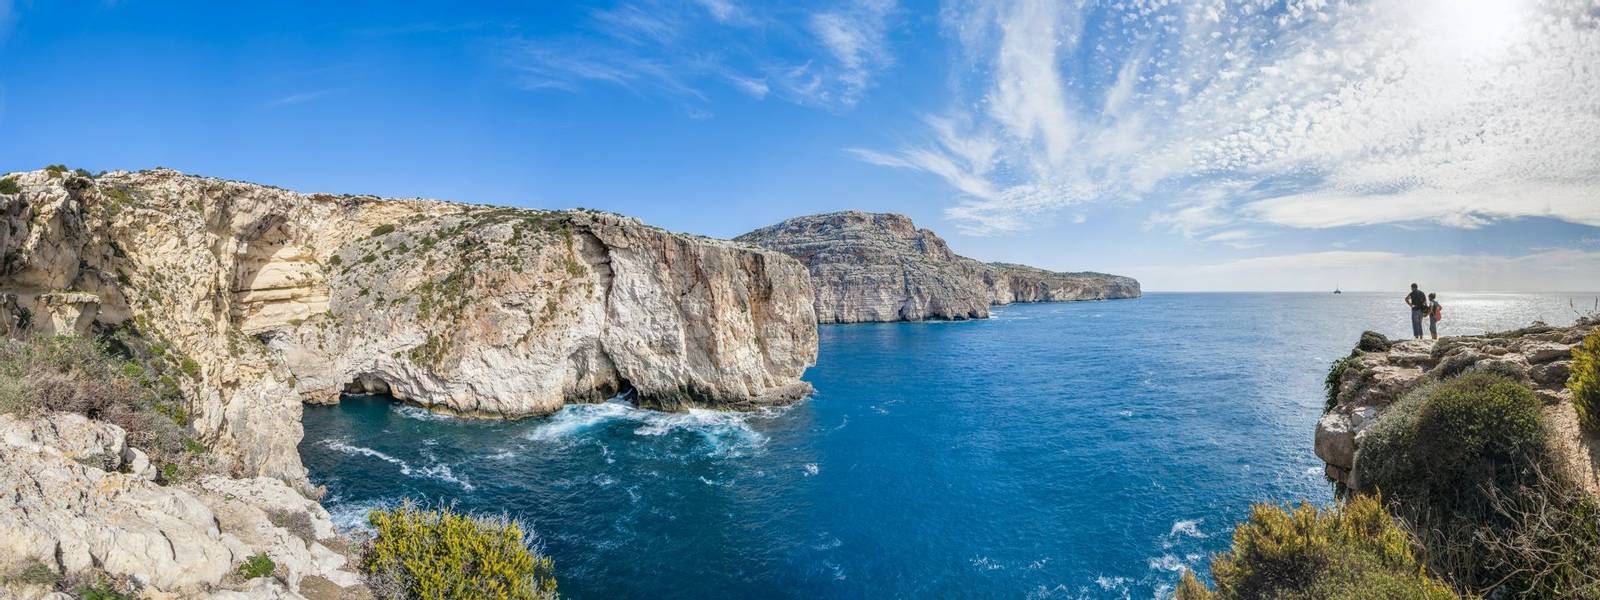 The Dingli Cliffs in Malta